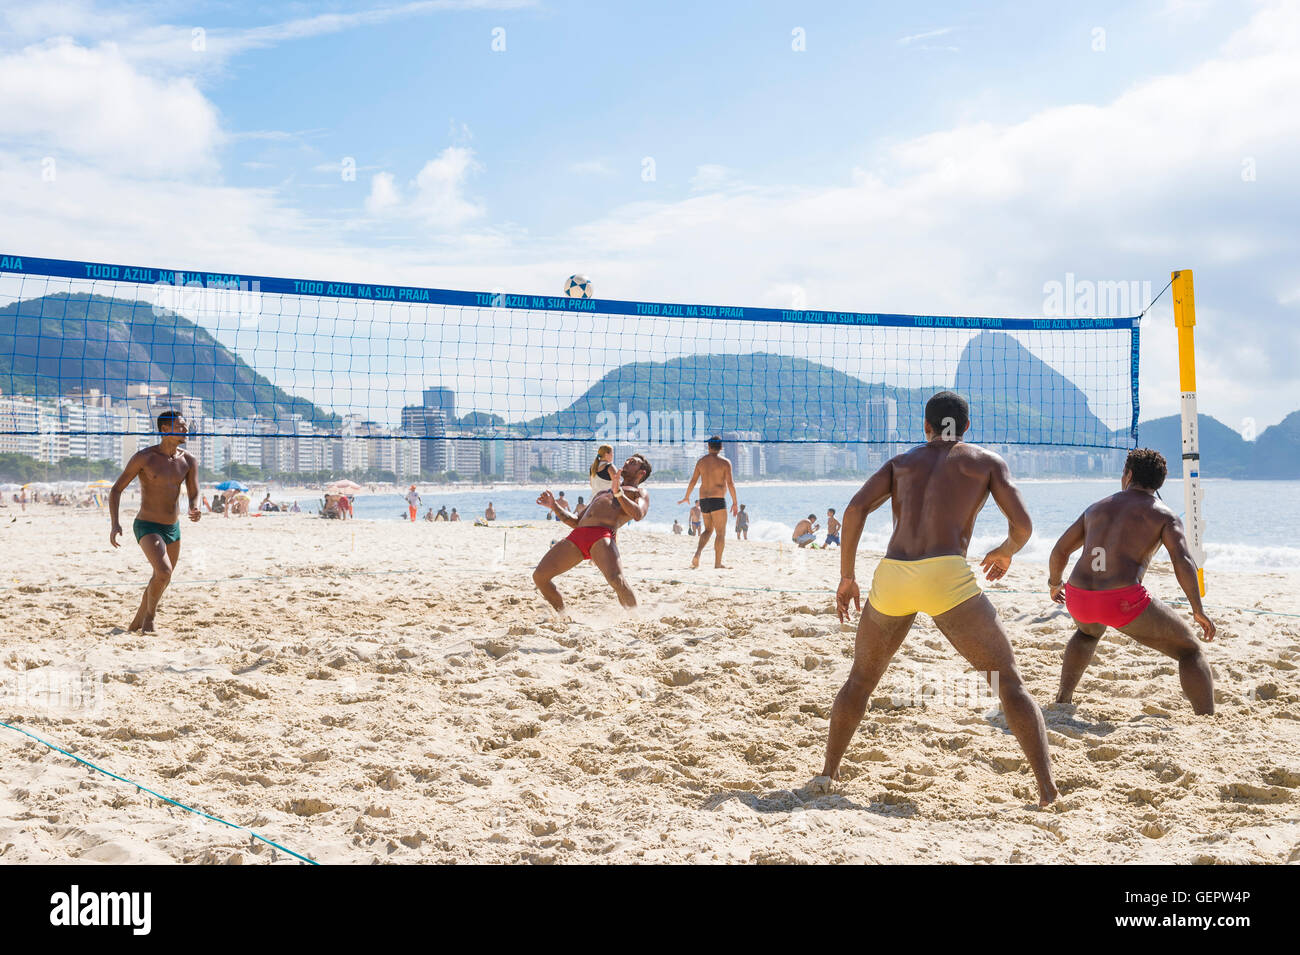 RIO DE JANEIRO - le 15 mars 2016 : Brazilian hommes jouent un jeu de futevôlei (footvolley, un sport alliant football et volley-ball). Banque D'Images